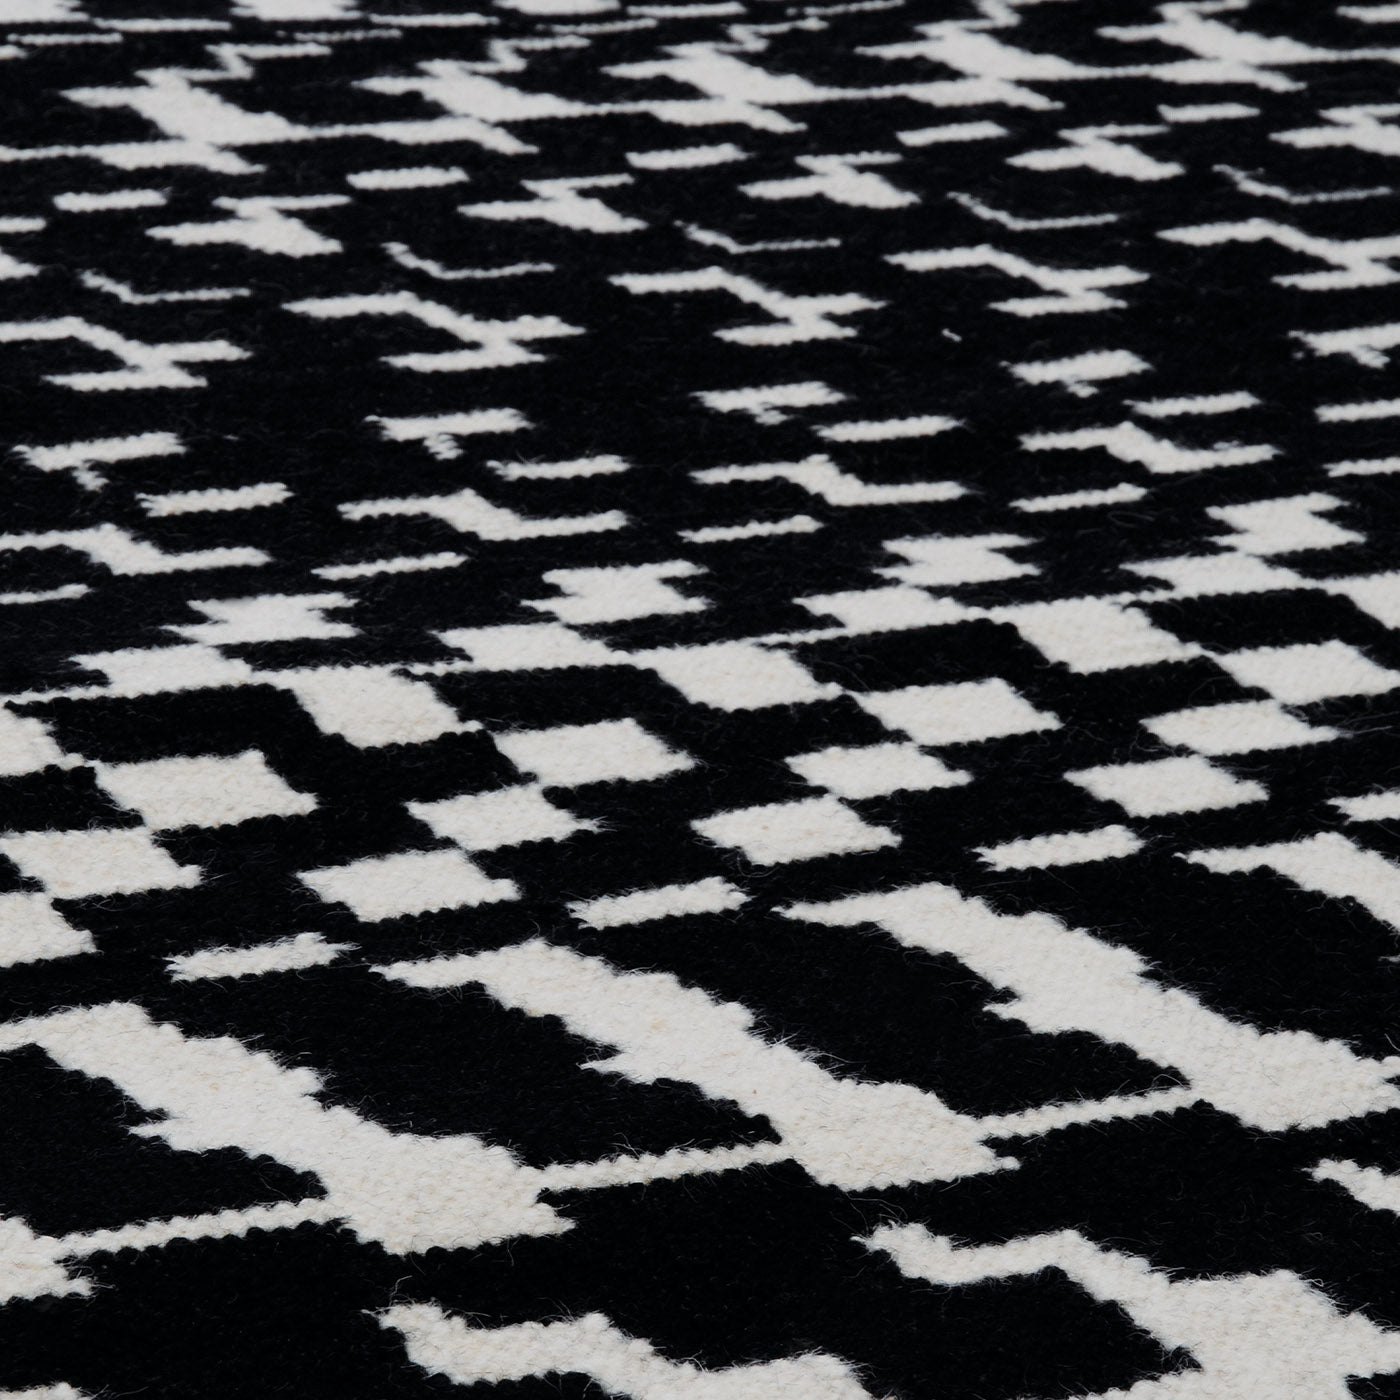 Fuoritempo Black & White Large Carpet - Alternative view 1